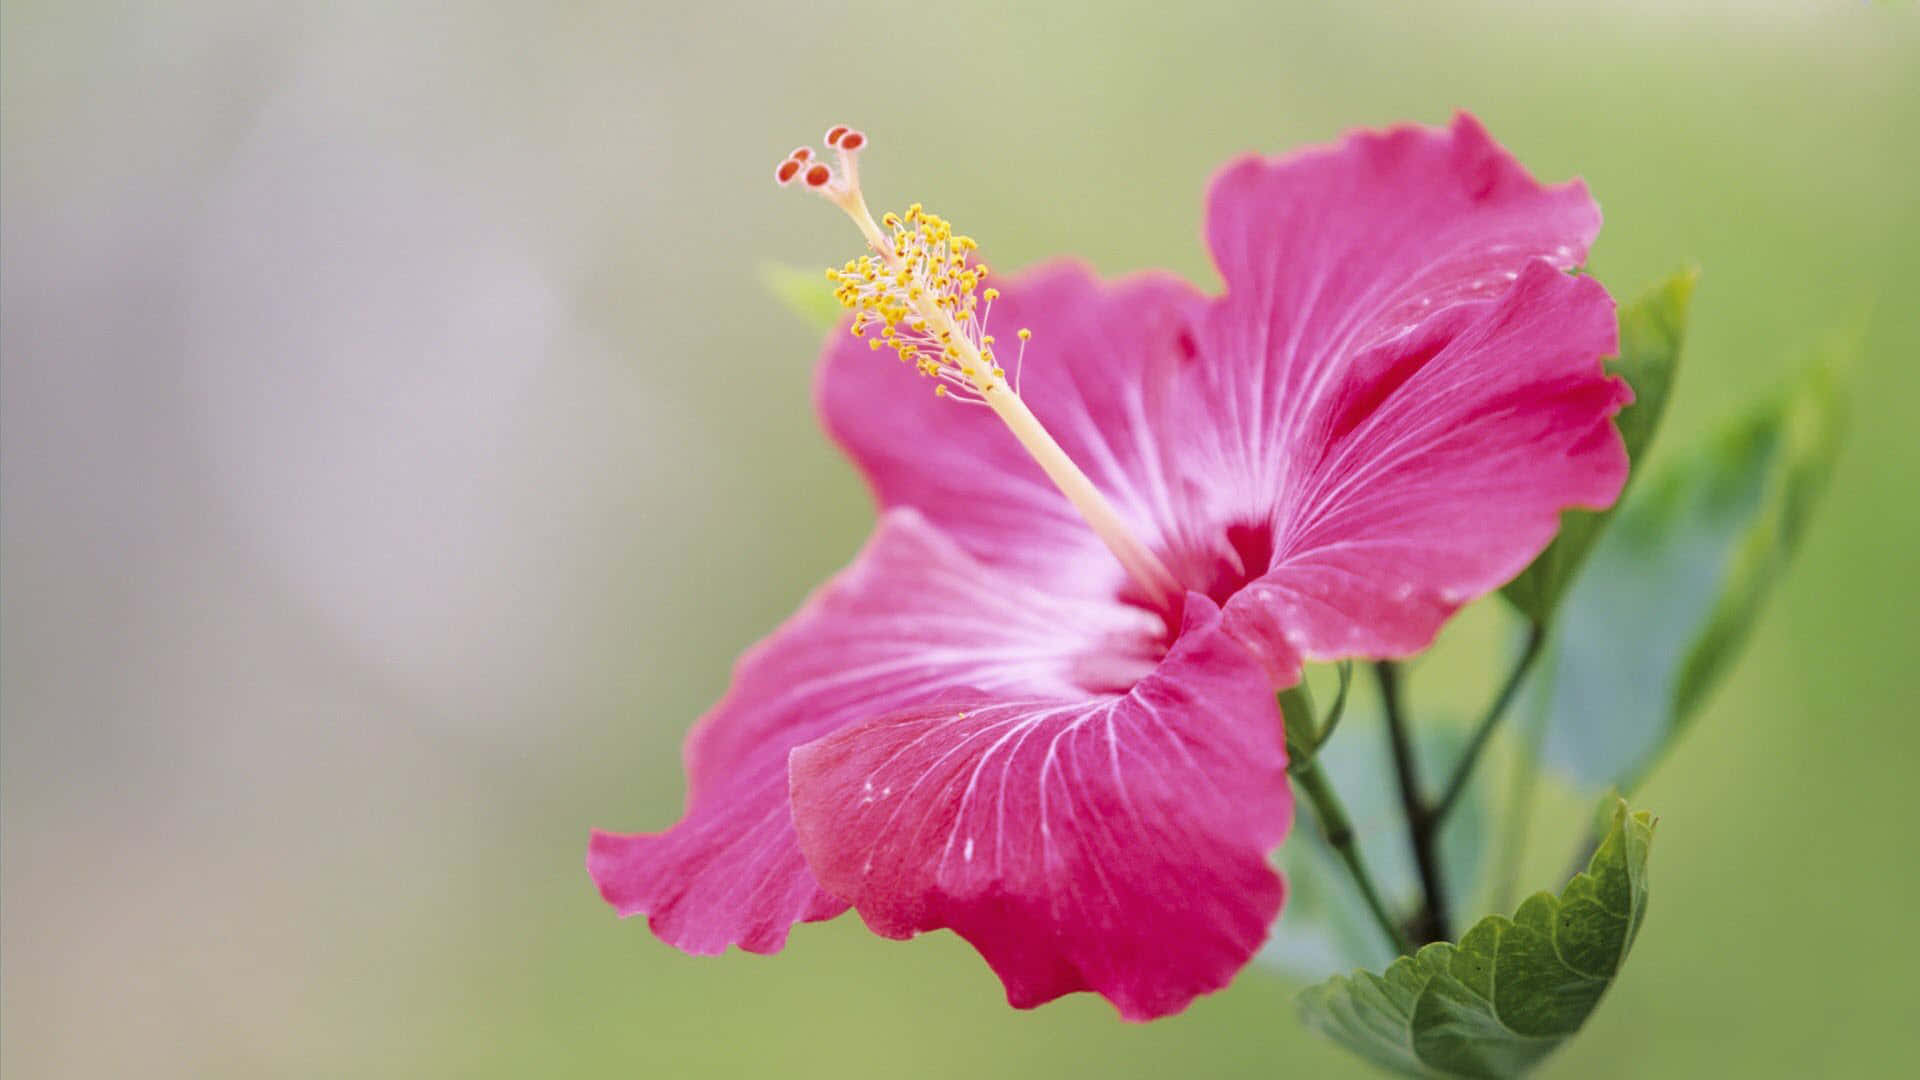 Eineschöne Rosa Blume Blüht In Ihrem Natürlichen Lebensraum. Wallpaper